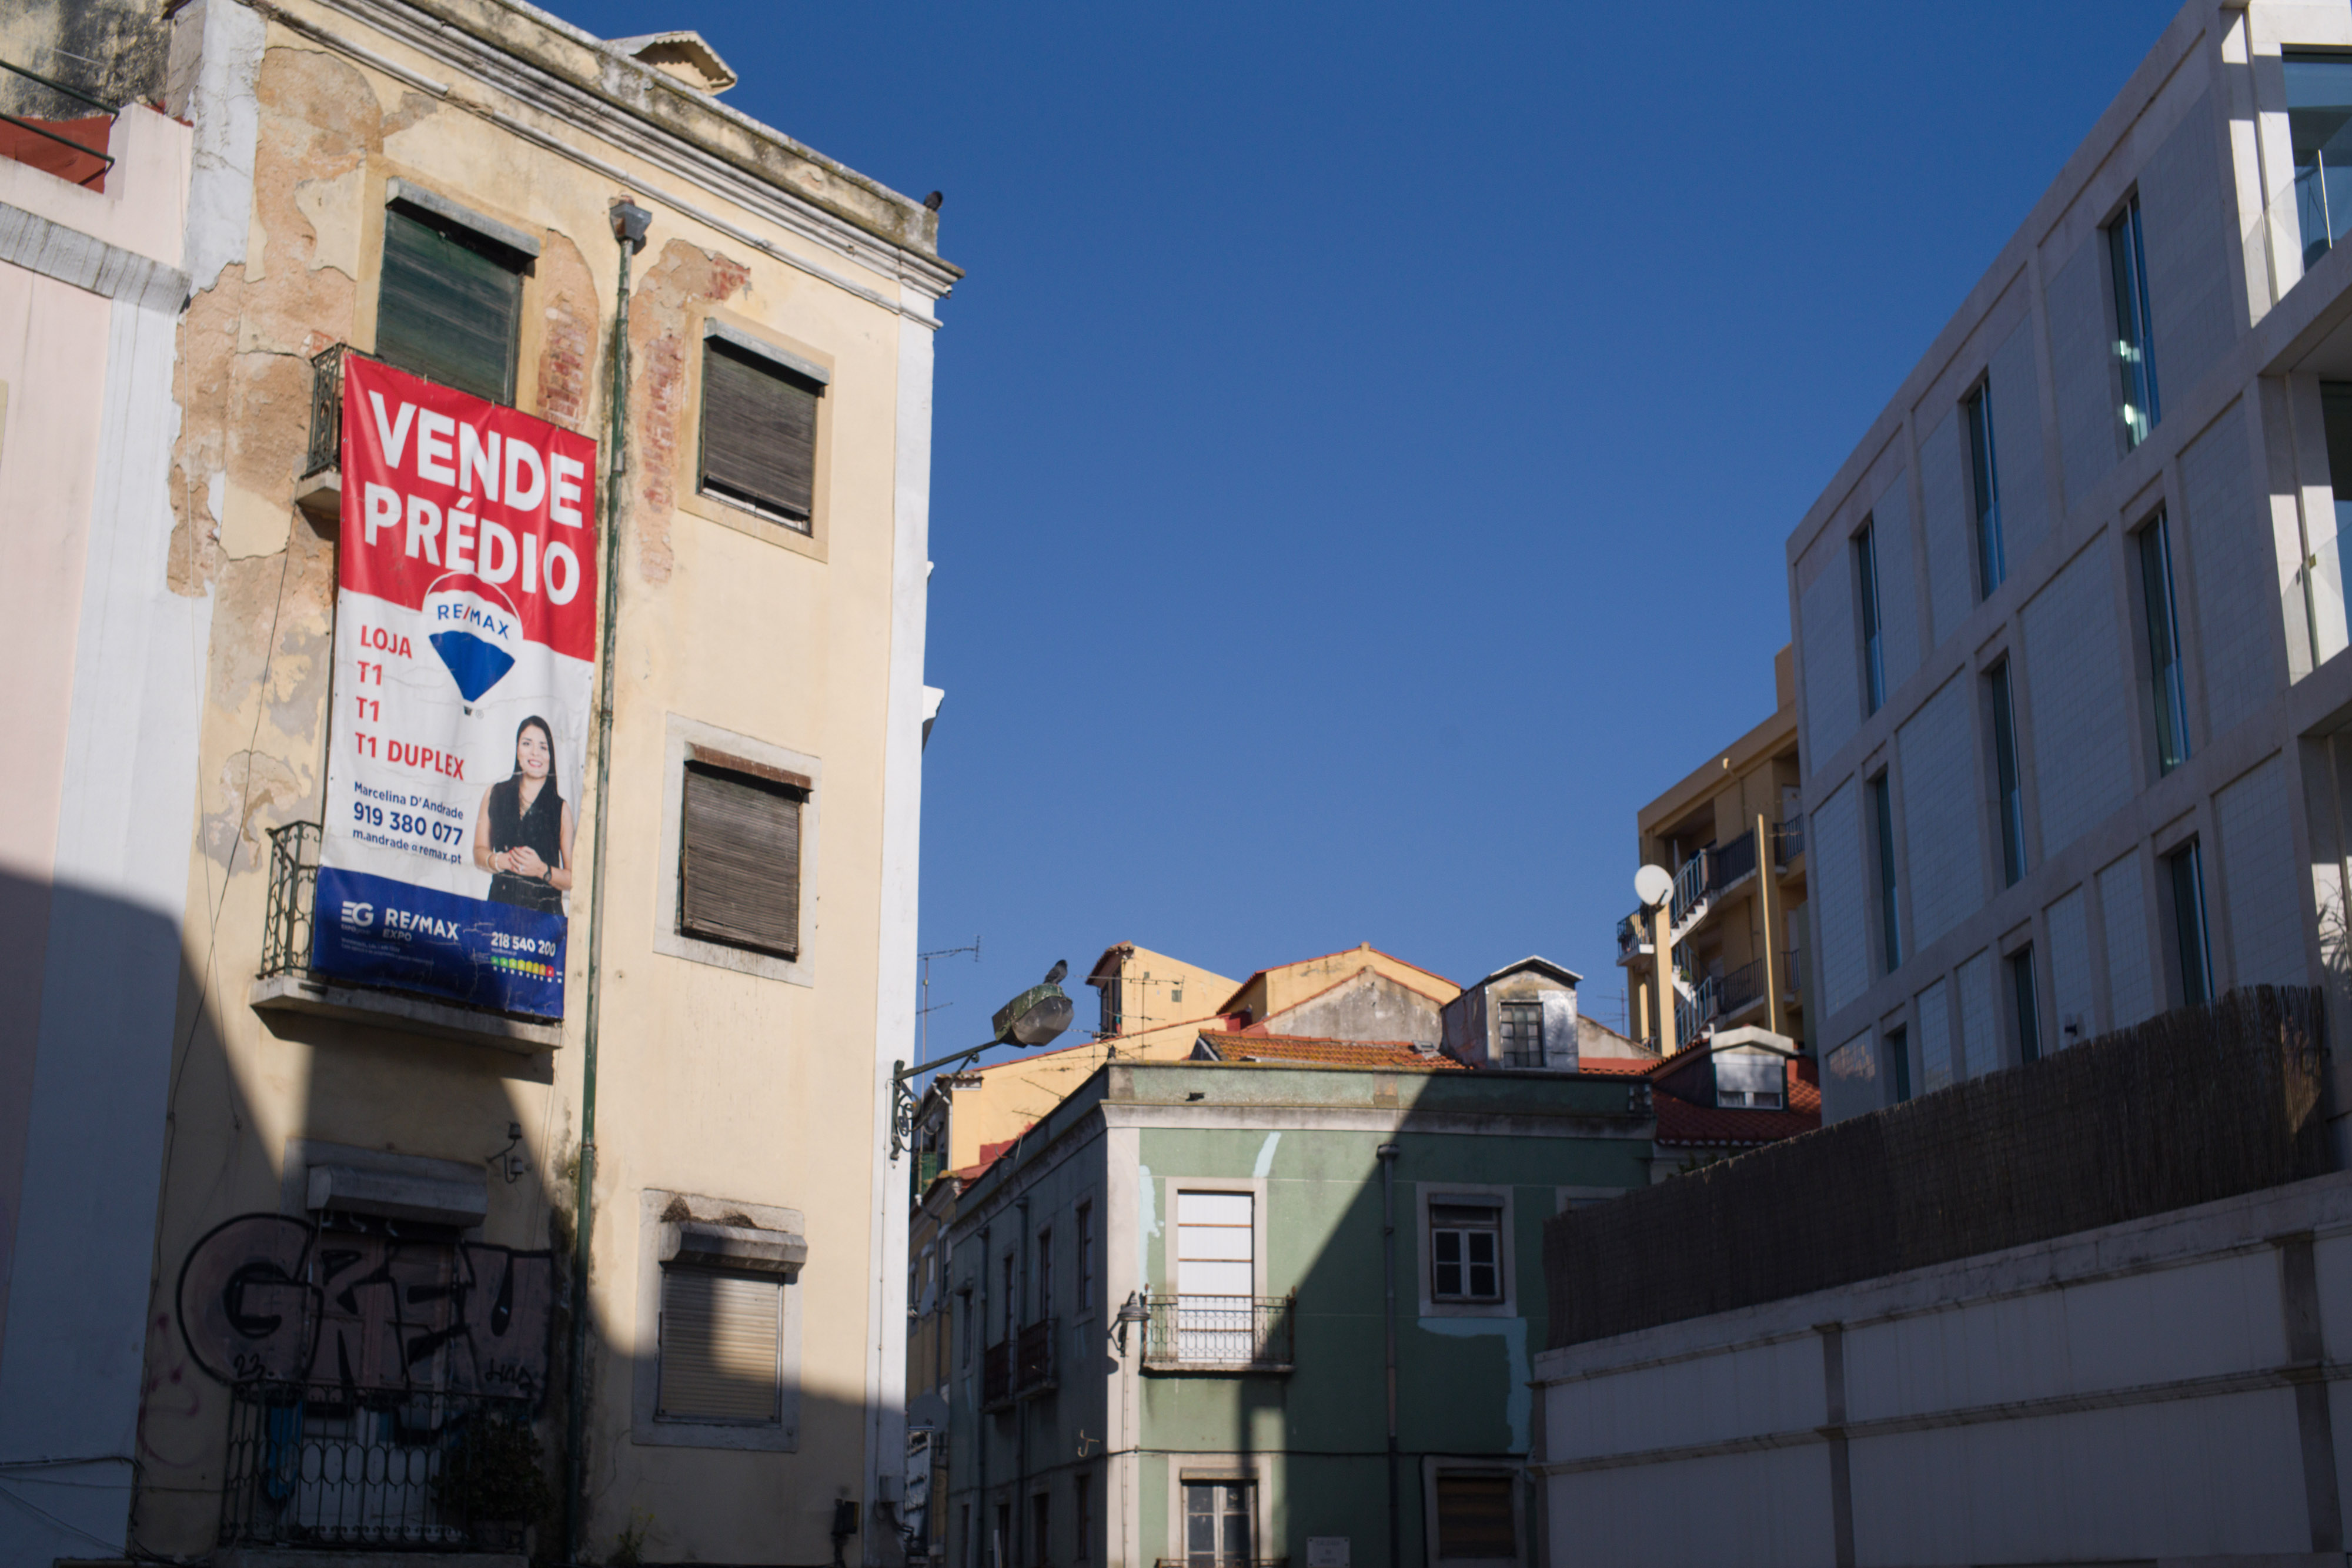 Media Markt Portugal lança loja online no Verão - Comércio